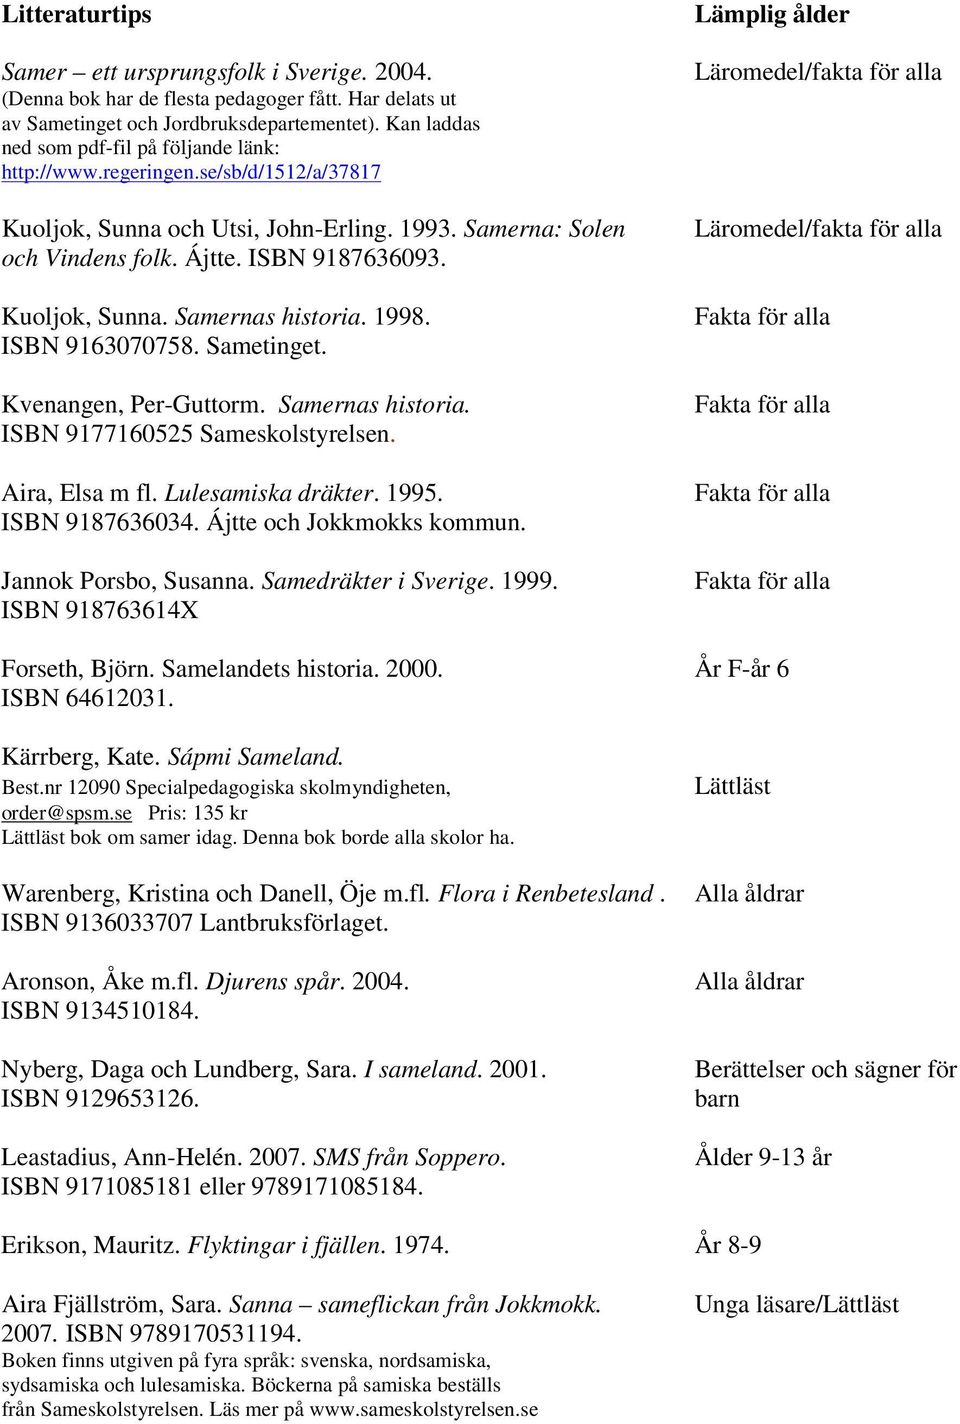 Kuoljok, Sunna. Samernas historia. 1998. ISBN 9163070758. Sametinget. Kvenangen, Per-Guttorm. Samernas historia. ISBN 9177160525 Sameskolstyrelsen. Aira, Elsa m fl. Lulesamiska dräkter. 1995.